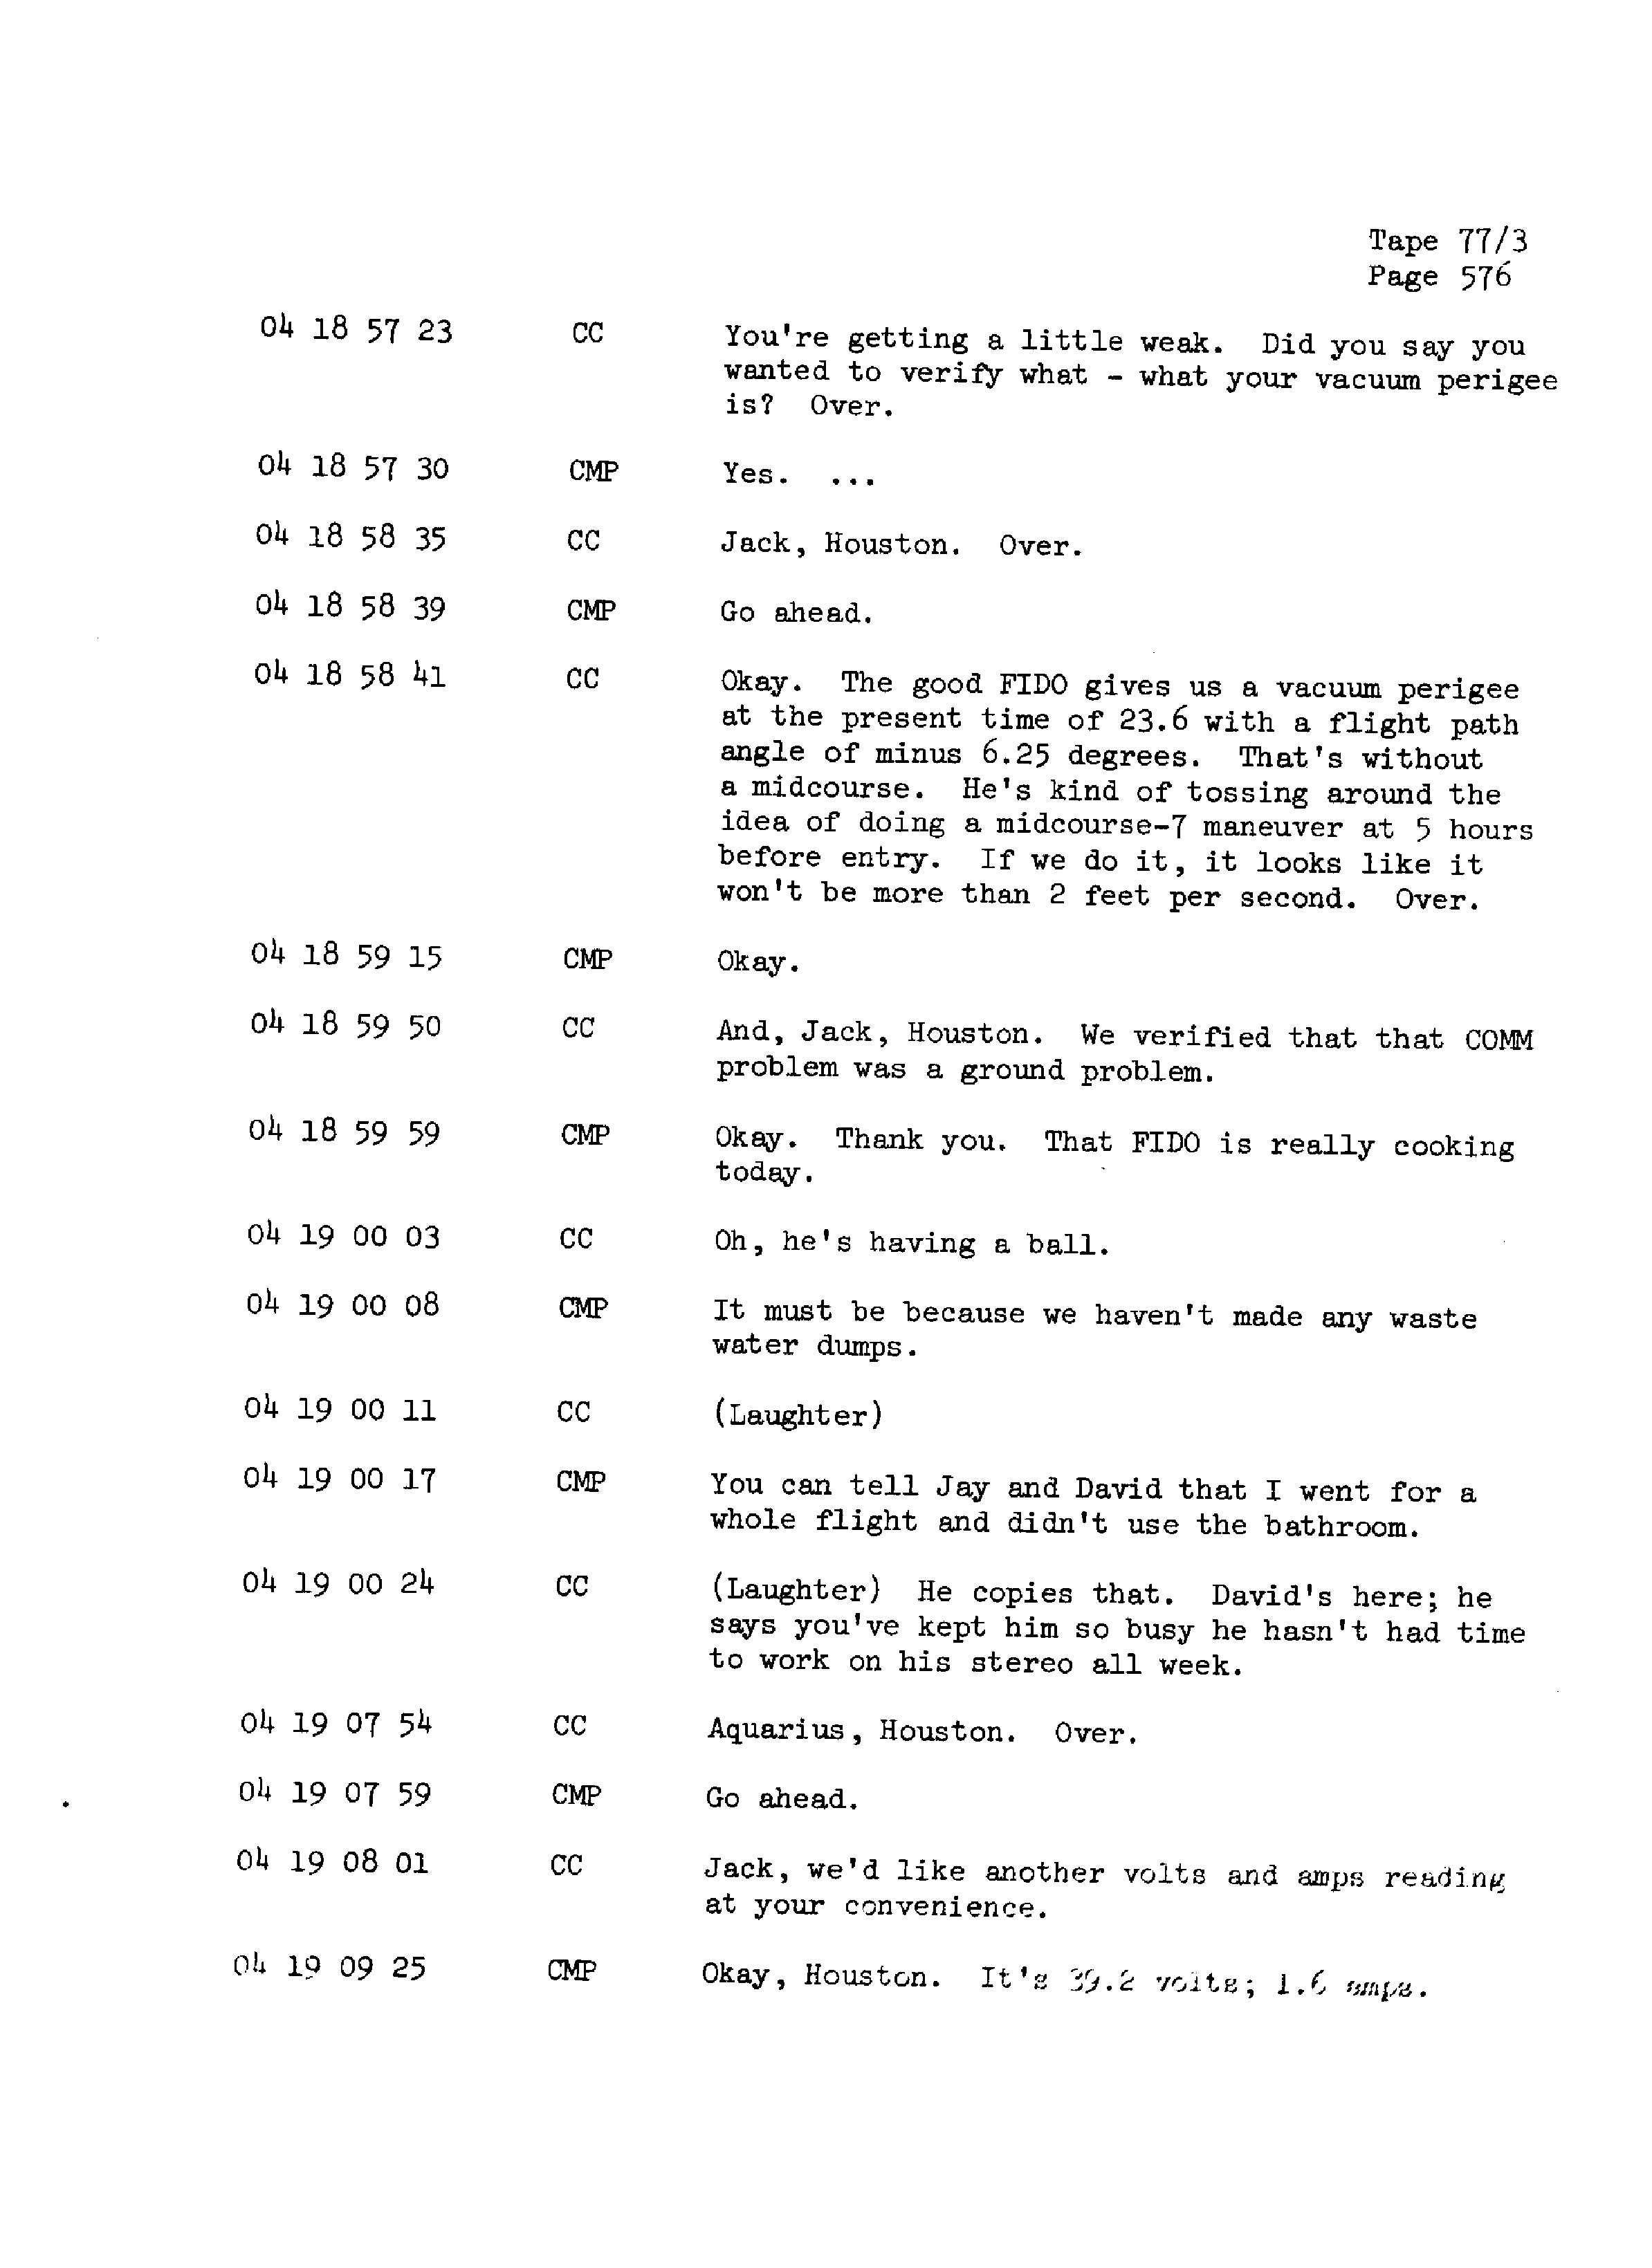 Page 583 of Apollo 13’s original transcript